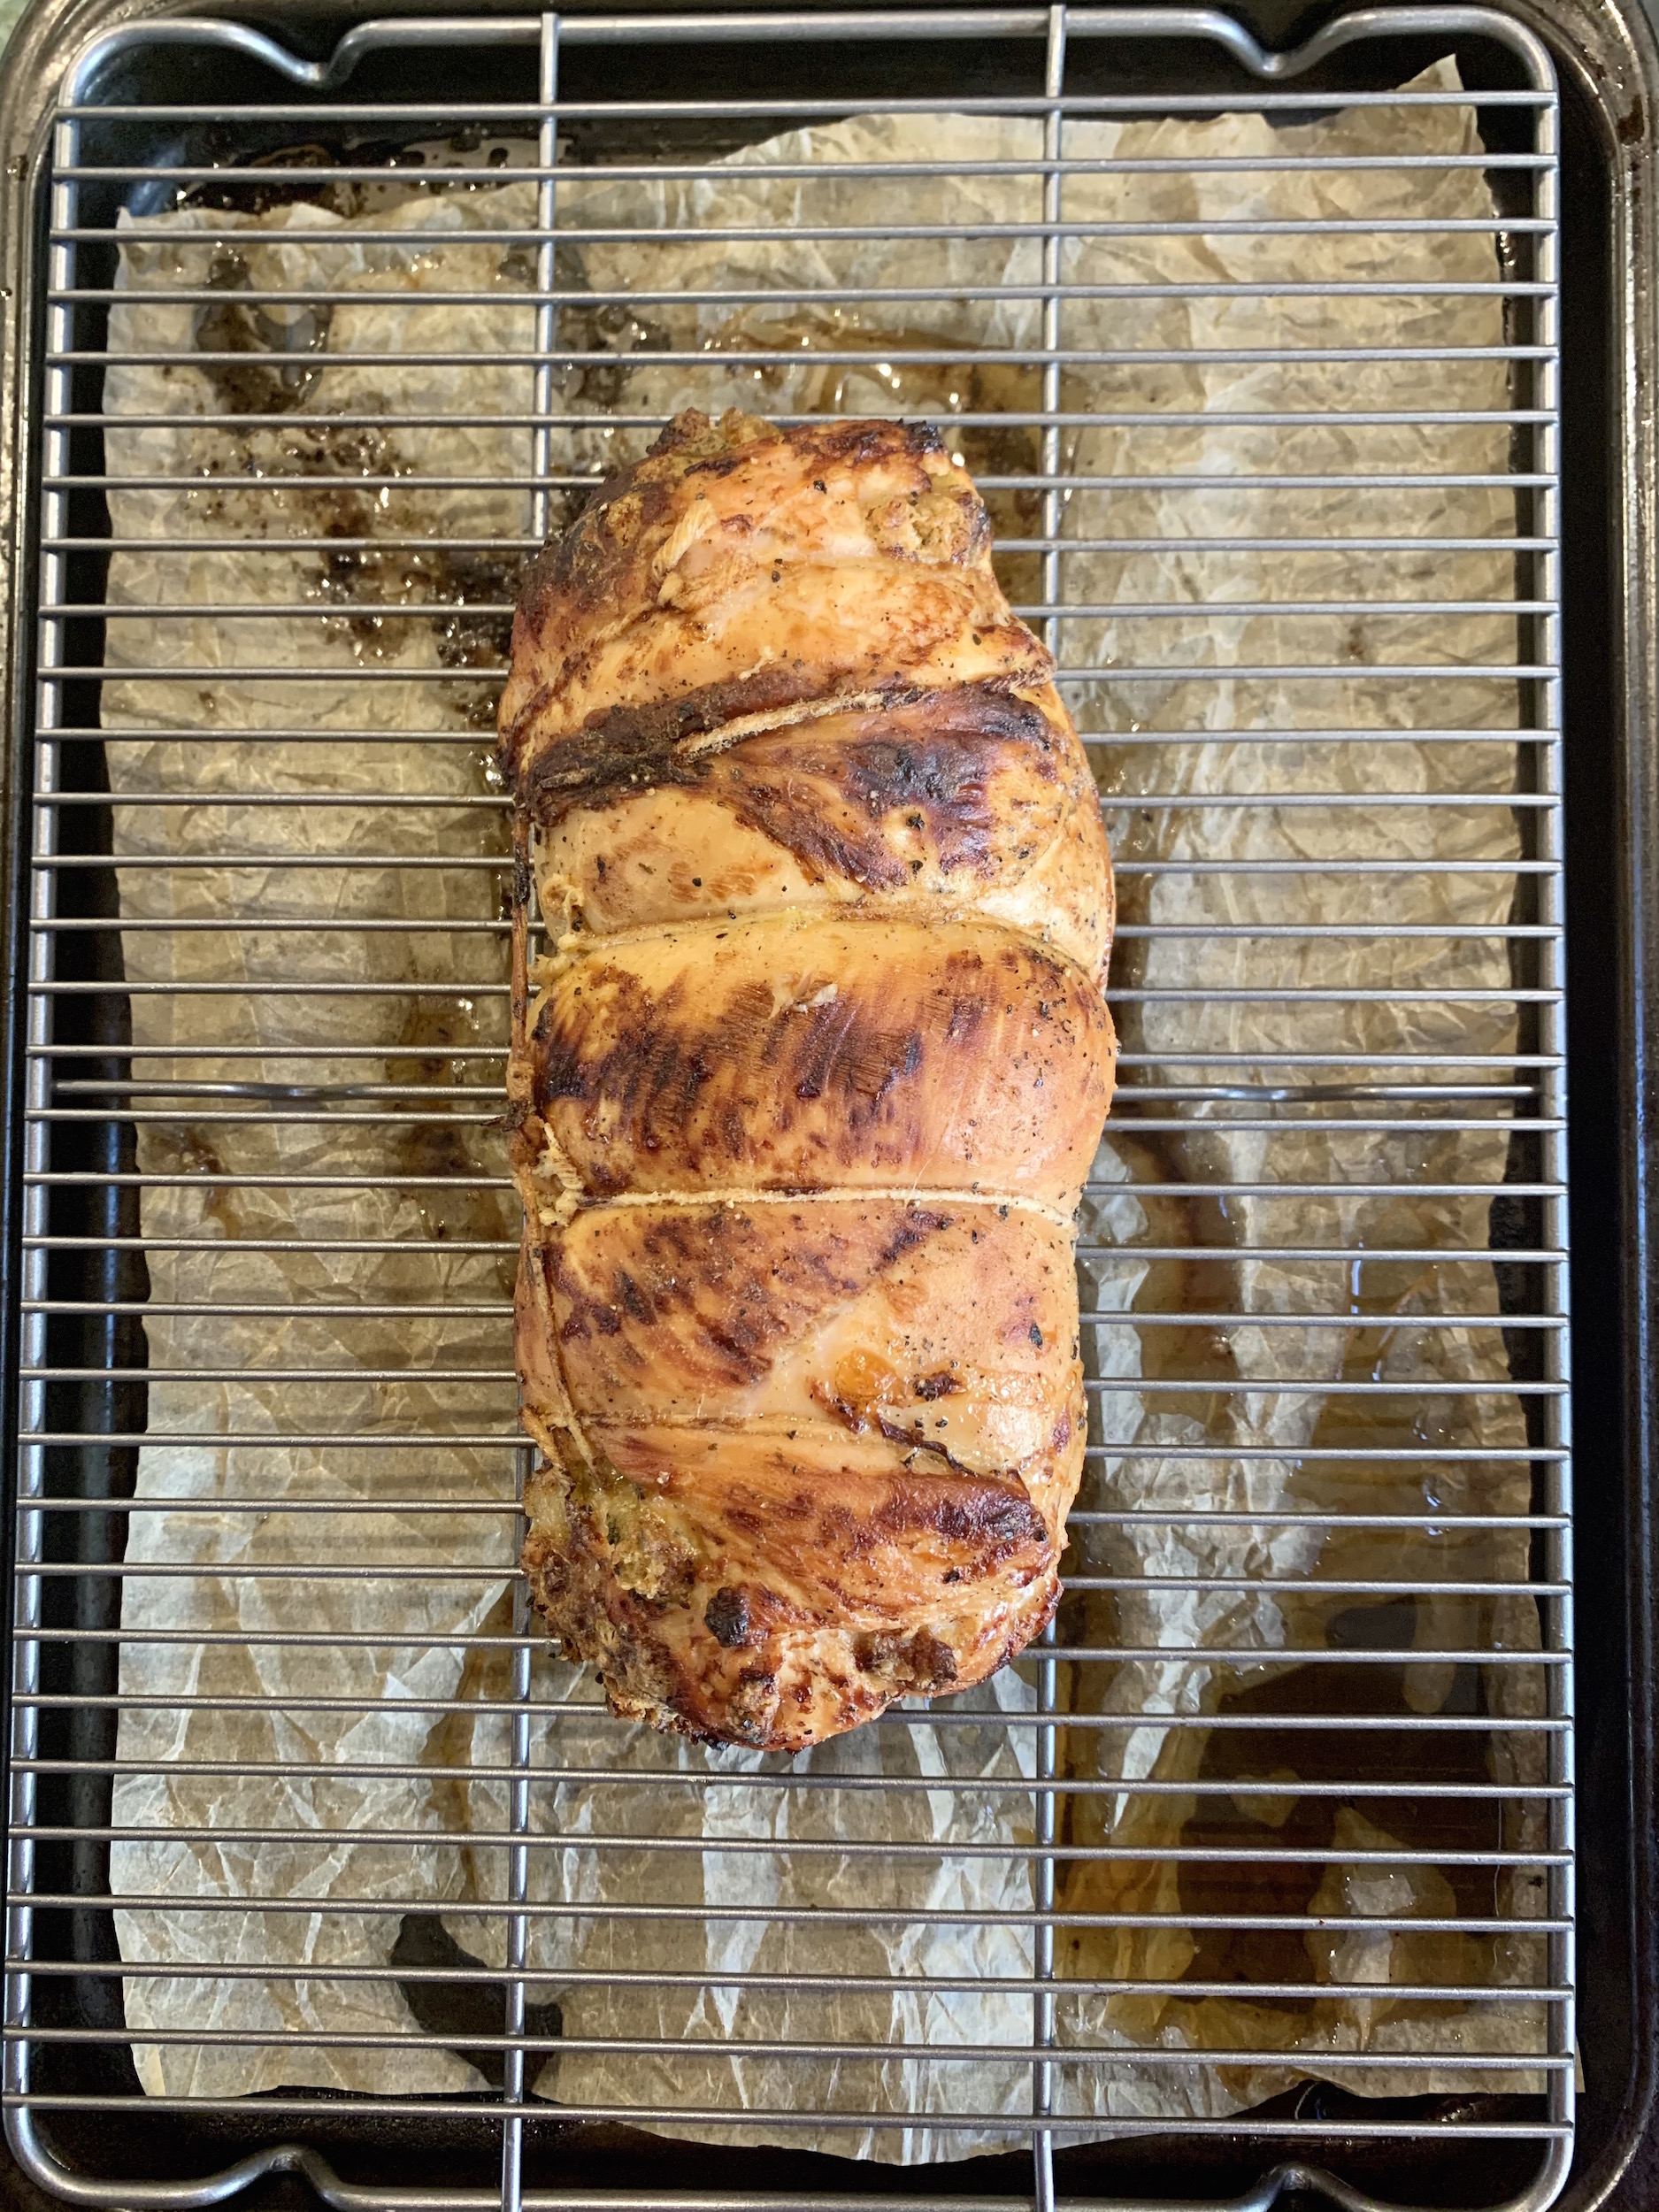 Roasted whole turkey roulade on baking sheet with rack